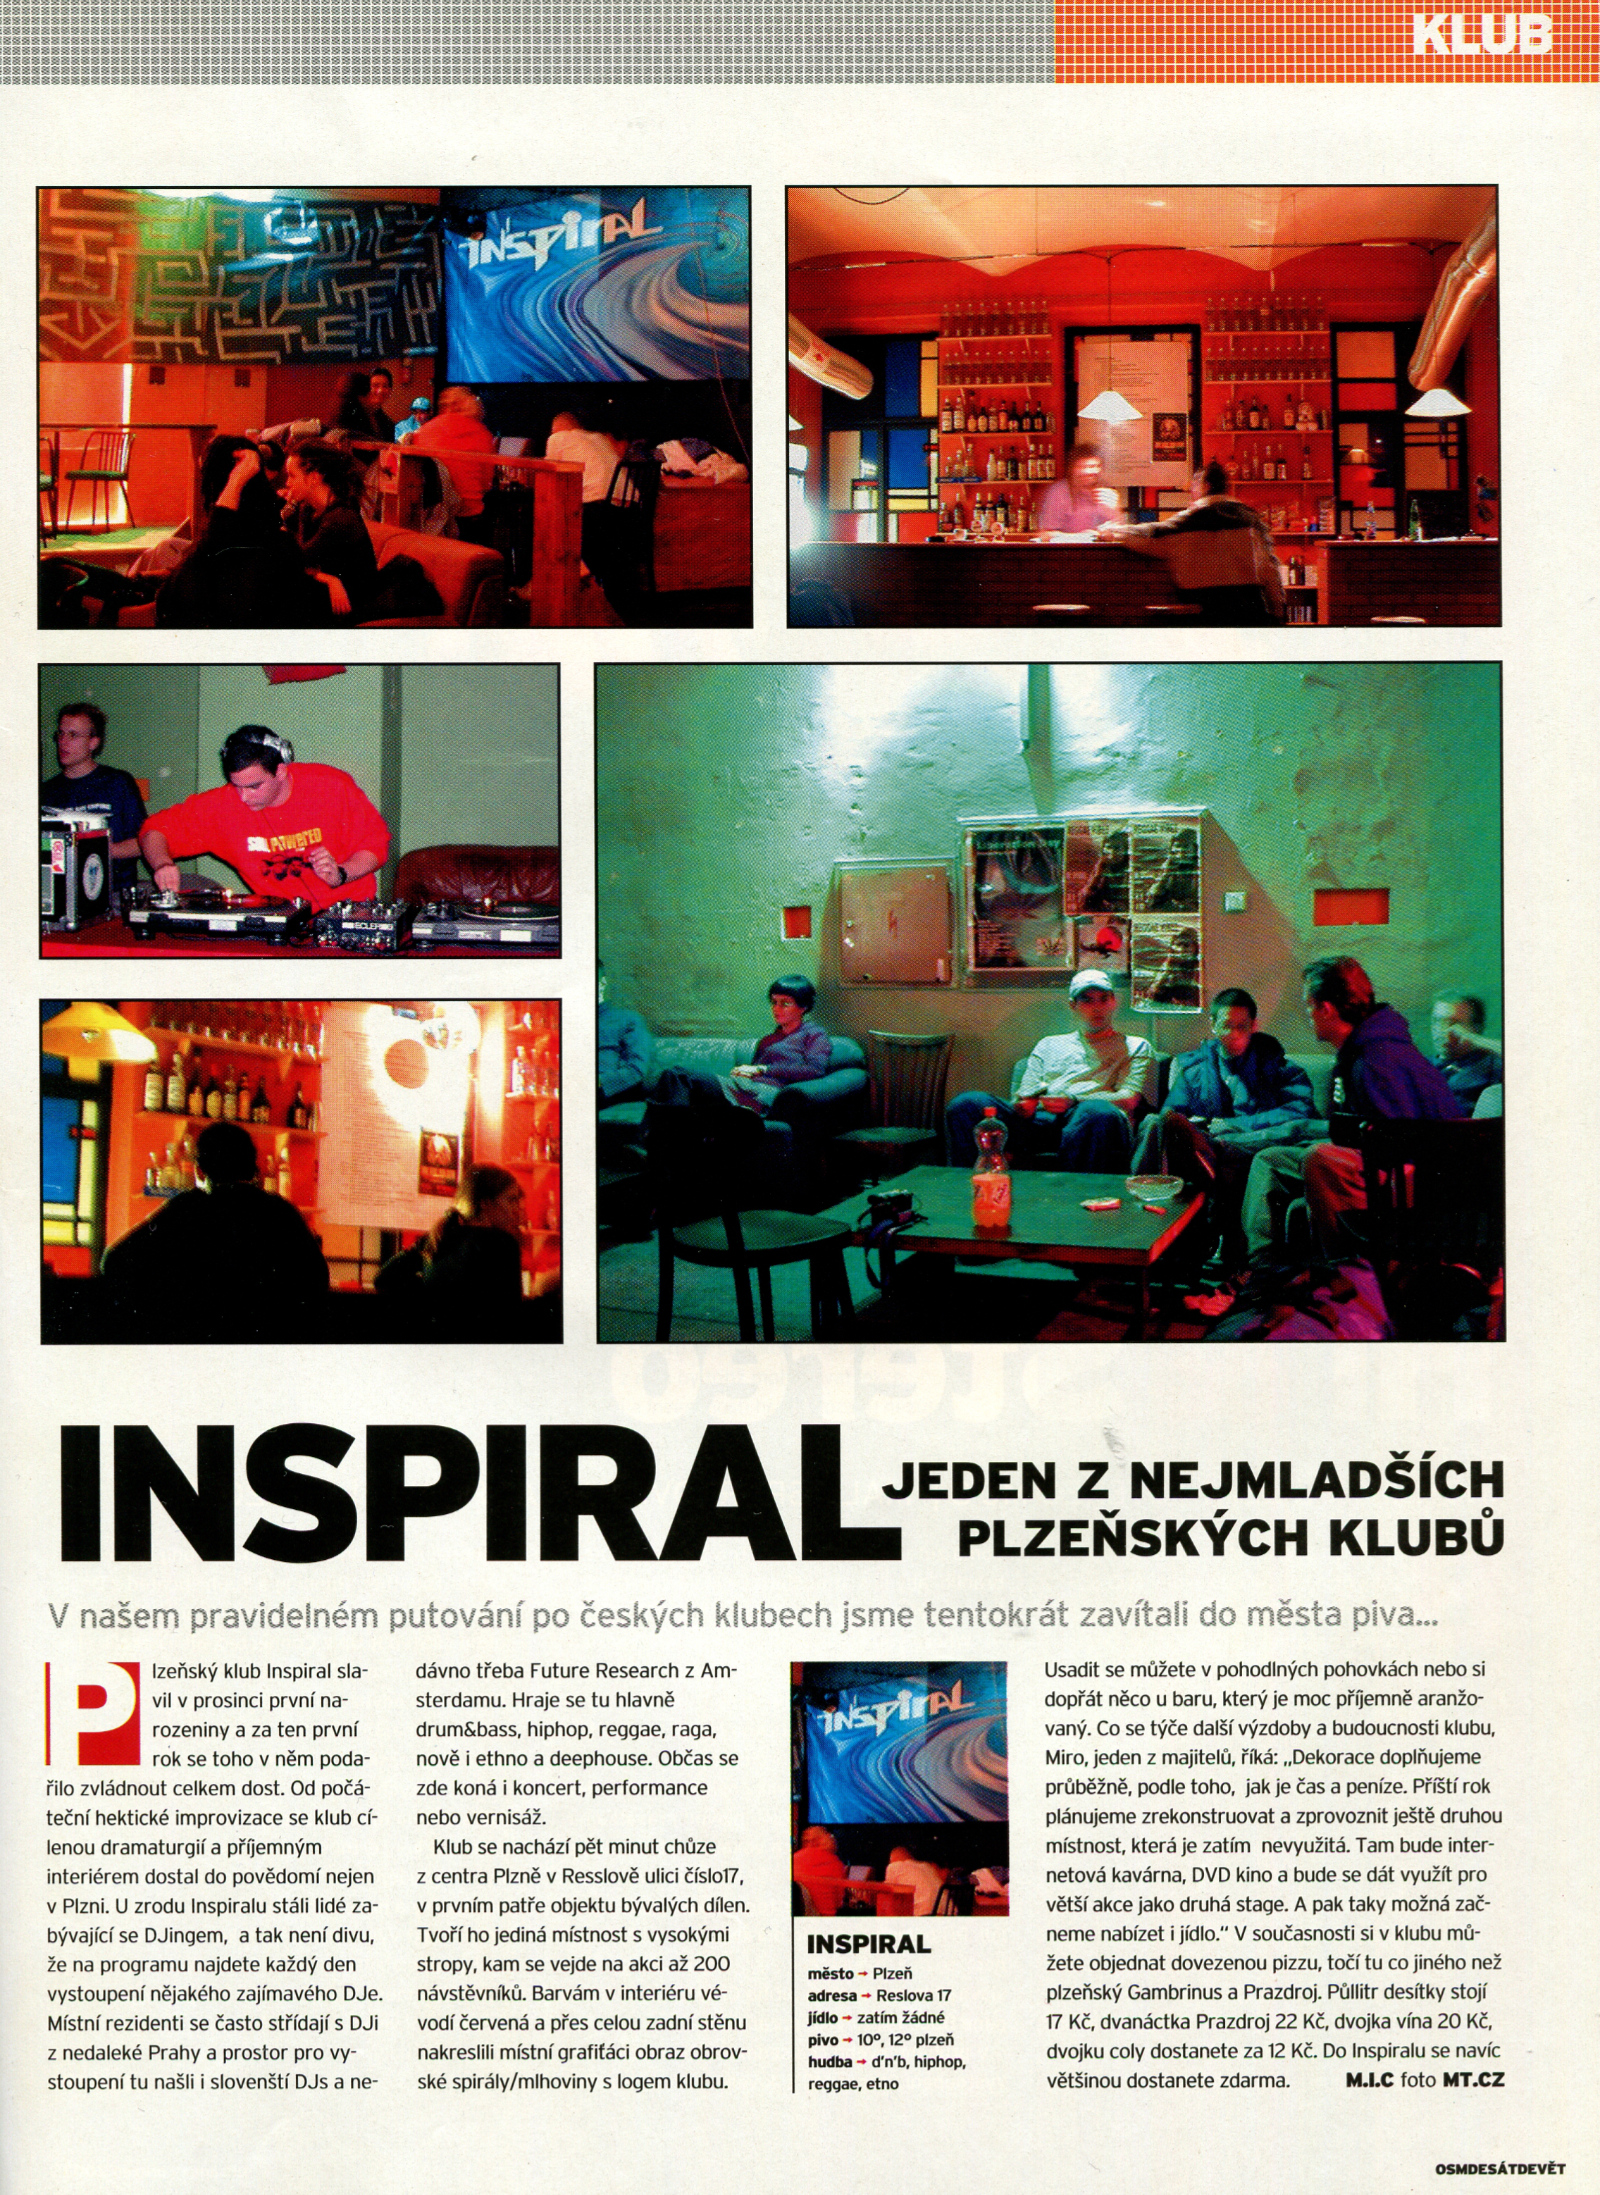 Inspiral club Plzeň - článek v časopisu Ultramix